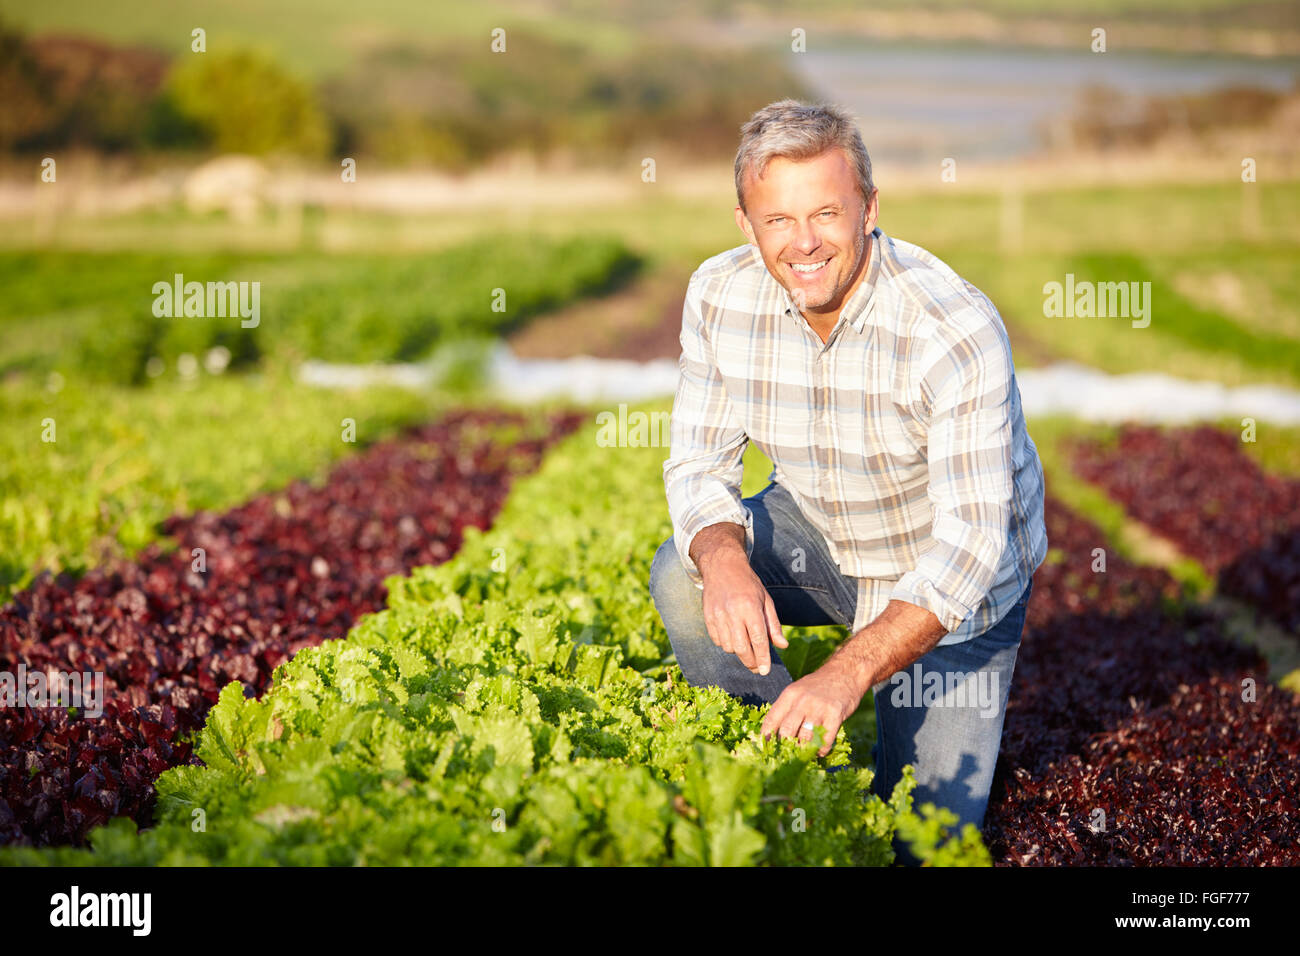 Feuilles de salades organiques Farmer harvesting on Farm Banque D'Images